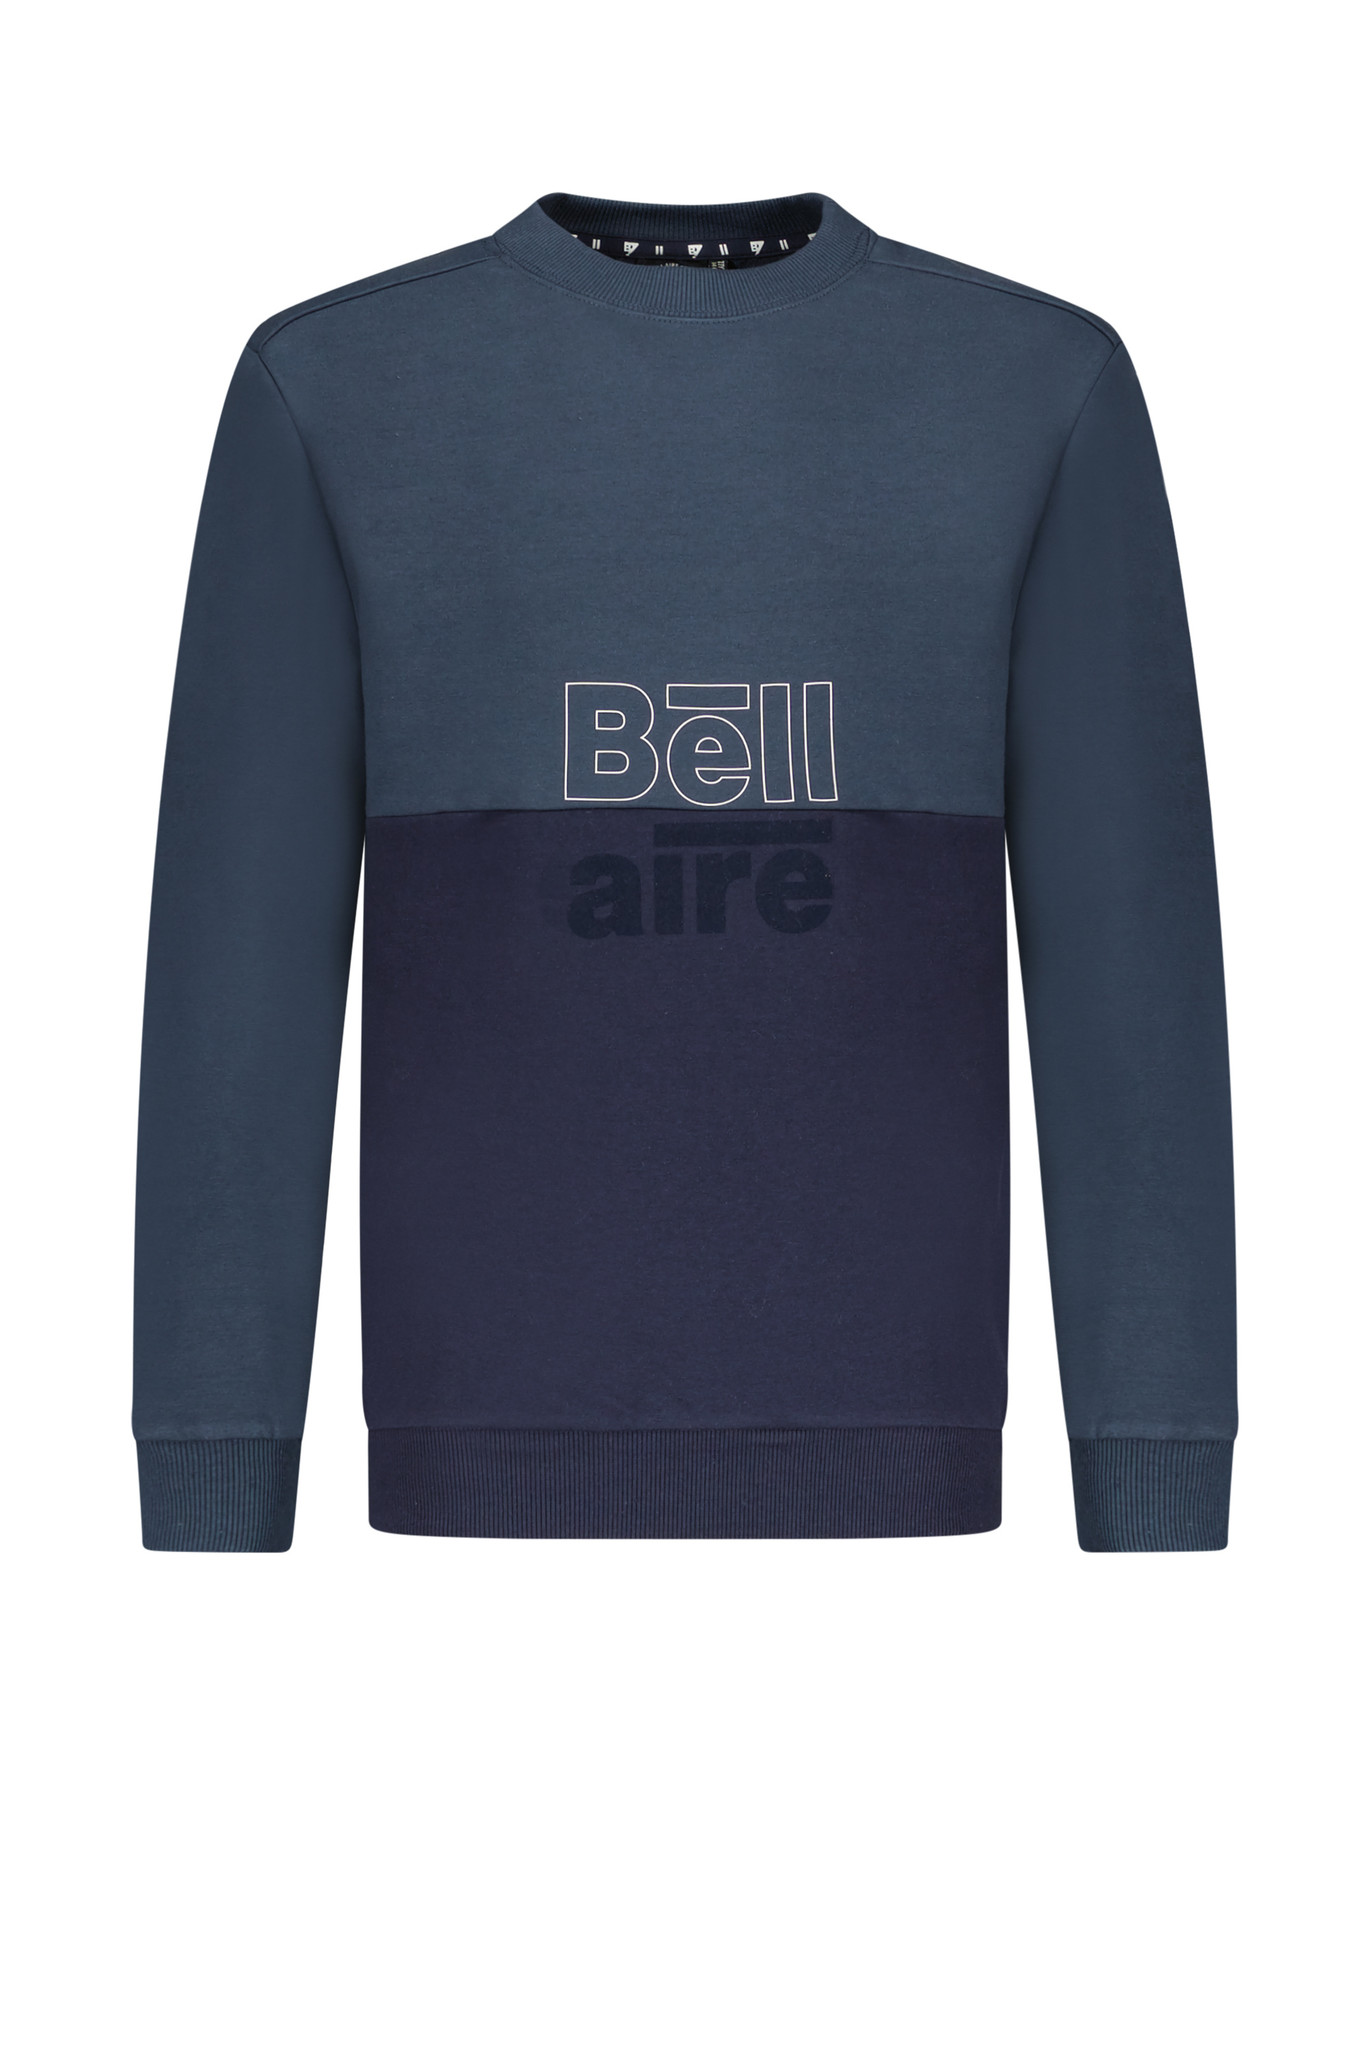 Bellaire jongens sweater ronde nek colorblock Midnight Navy